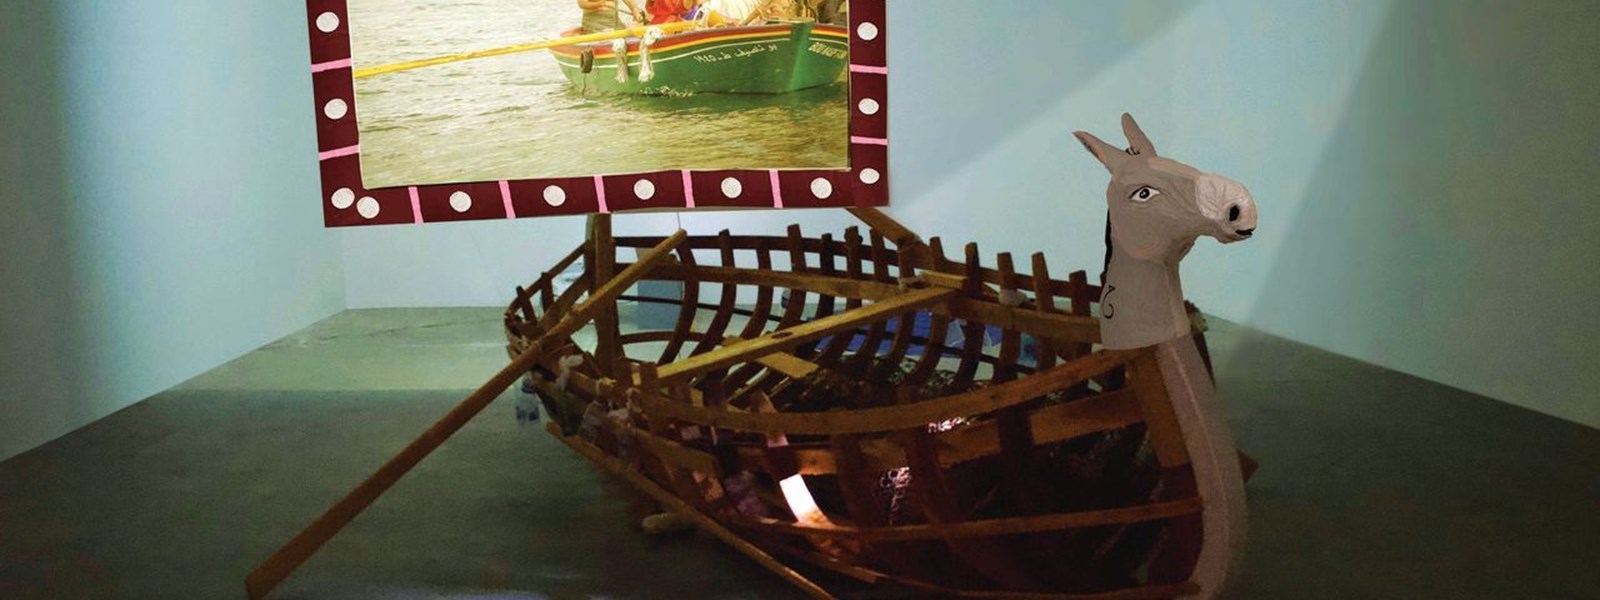 منيرة الصلح، رقصة من حكايتها (2023)، قارب خشبي وسارية.